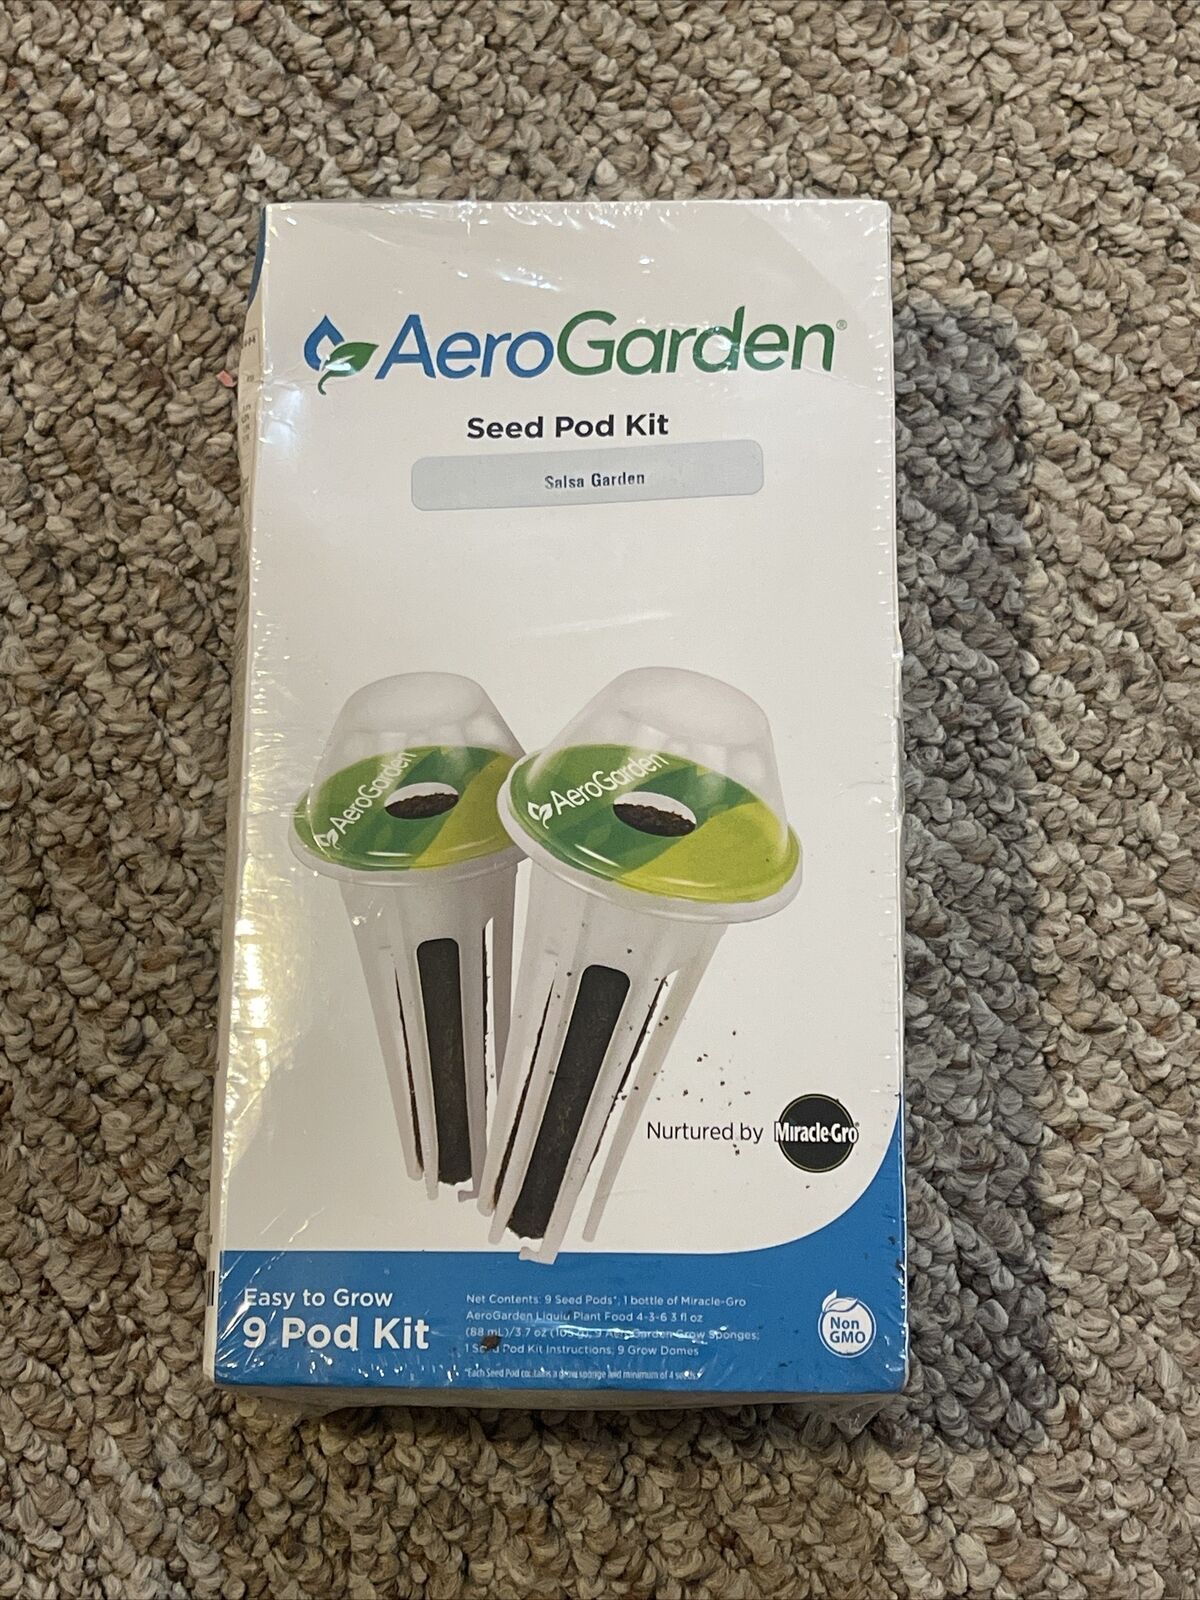 AeroGarden Salsa Garden Seed Pod Kit (9-pod)